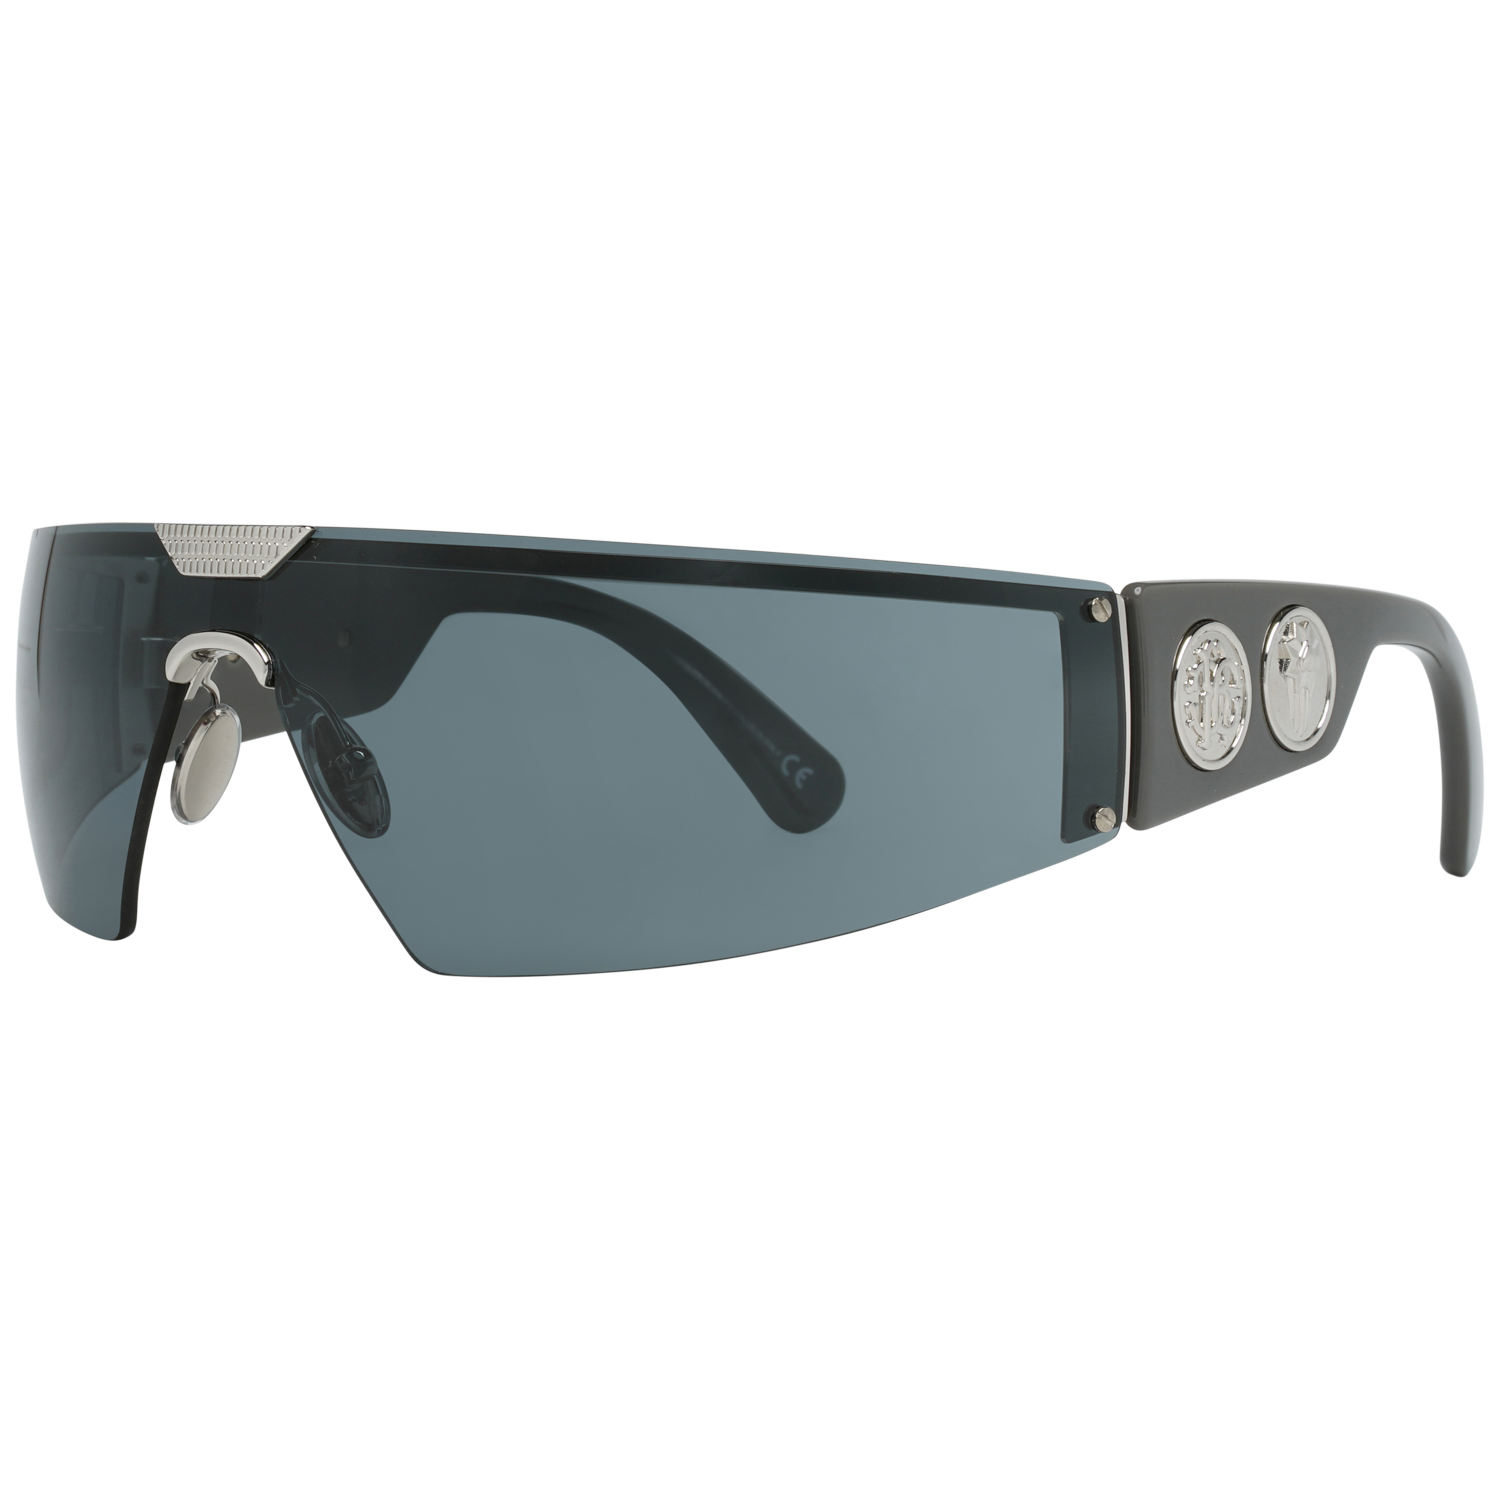 Roberto Cavalli Sunglasses Roberto Cavalli Sunglasses RC1120 16A 120 Eyeglasses Eyewear UK USA Australia 